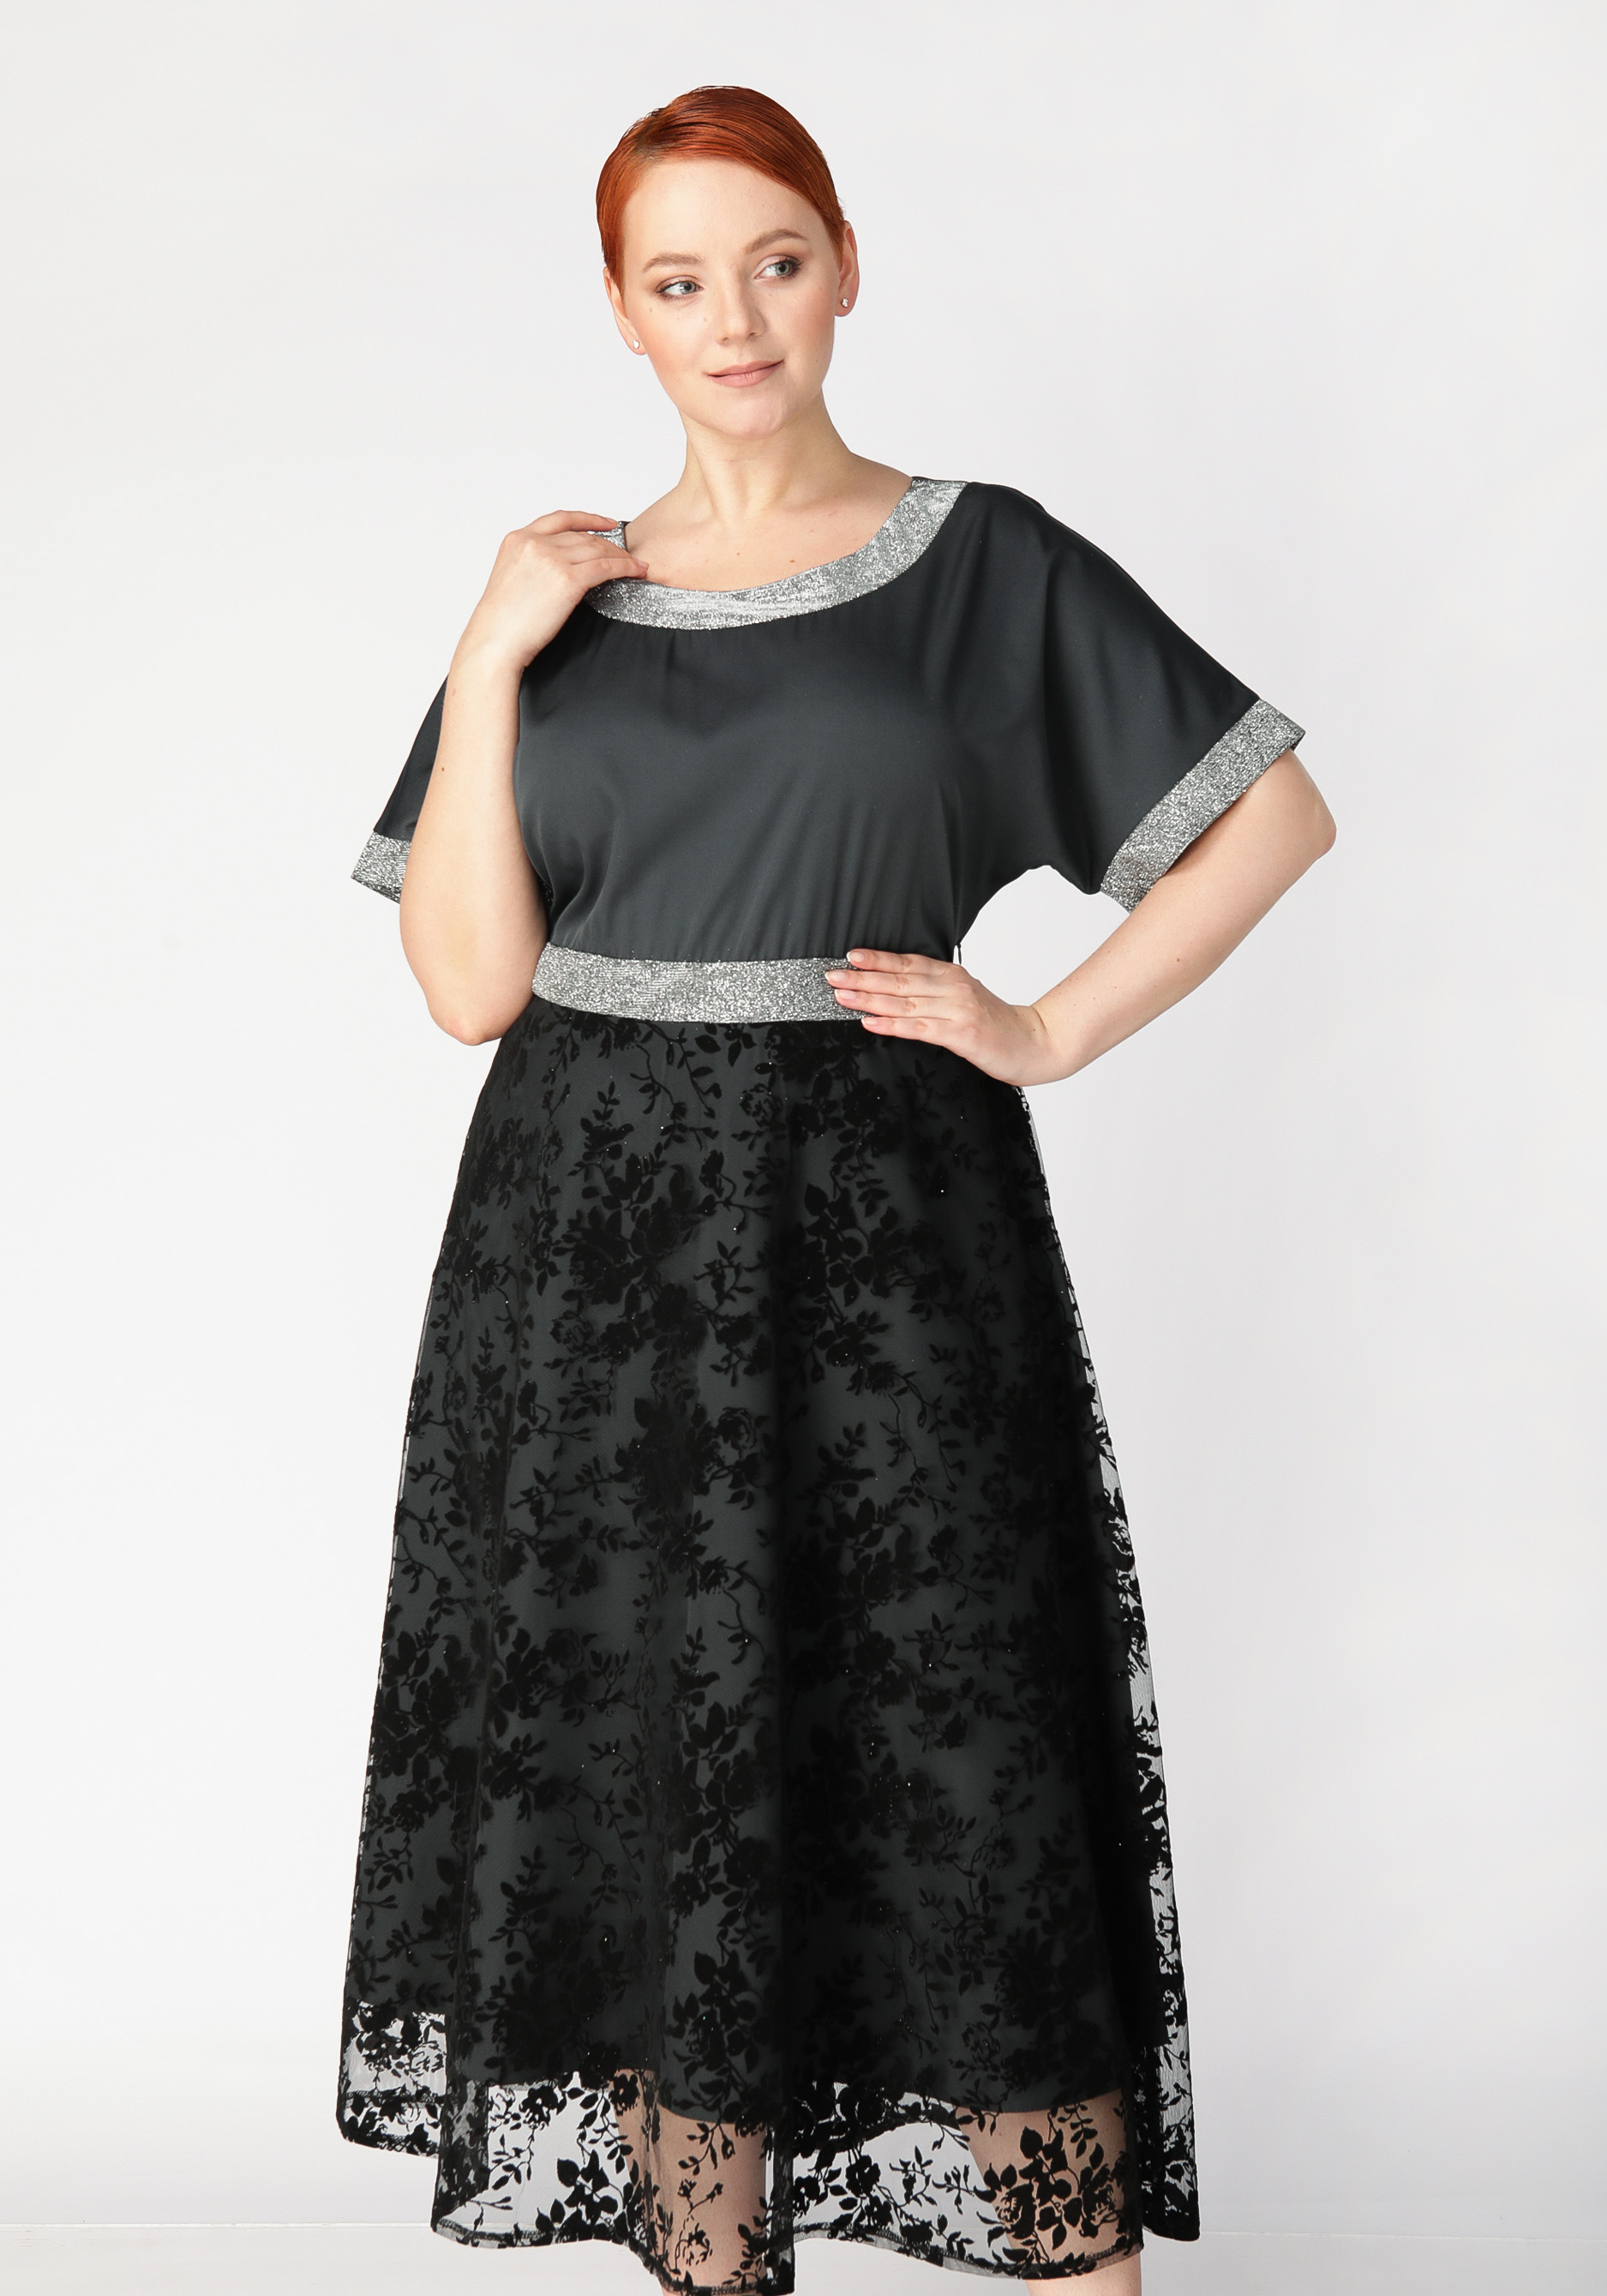 Платье с объемным принтом Mio Imperatrice, цвет баклажановый, размер 54 - фото 6